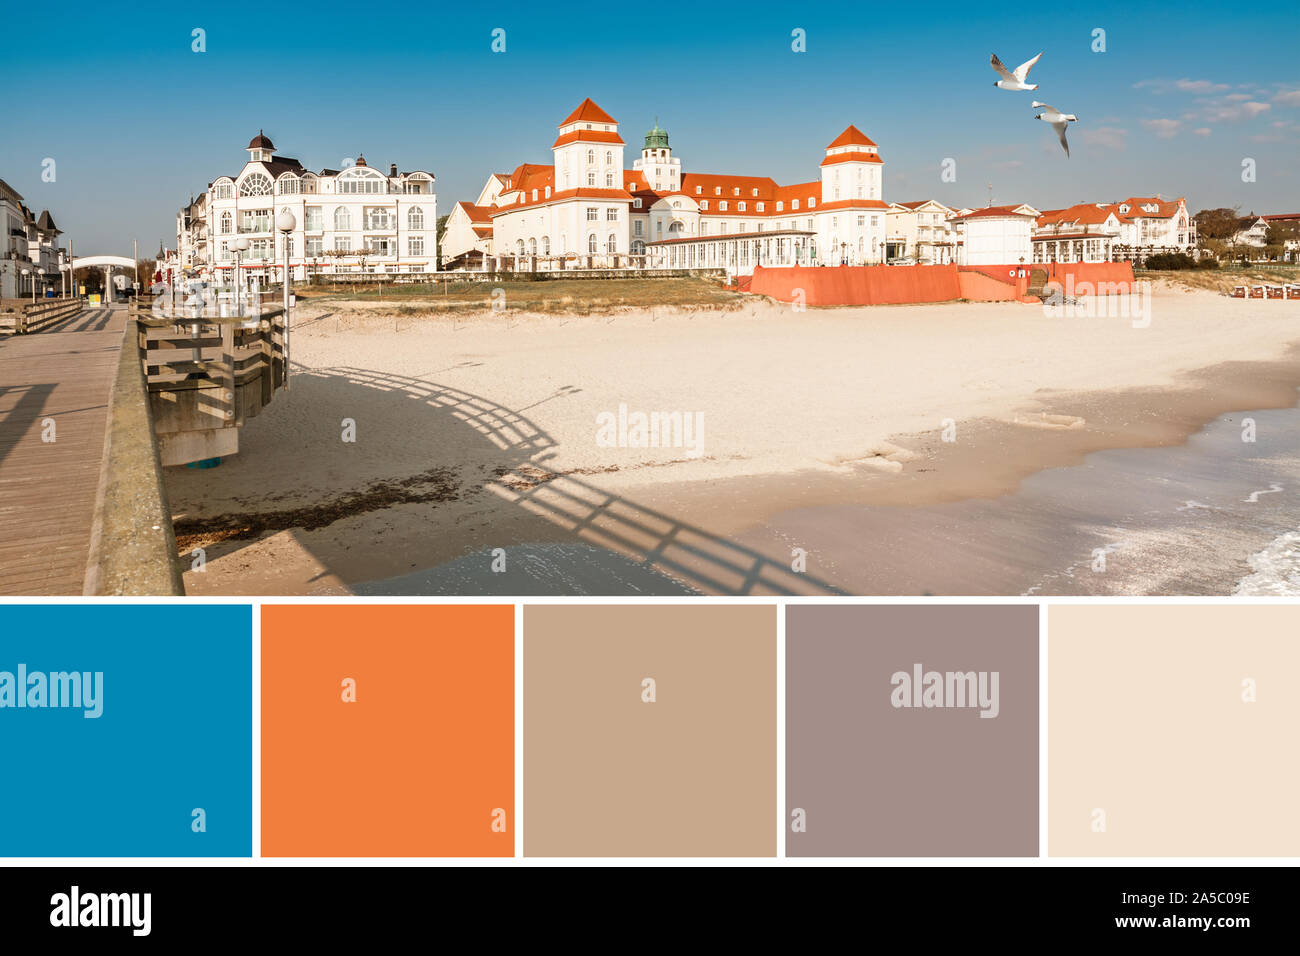 La correspondance des couleurs palette complémentaire avec bleu, orange et  beige à partir de l'image de l'architecture en seasude allemand  traditionnel resort Binz sur Ruege Photo Stock - Alamy